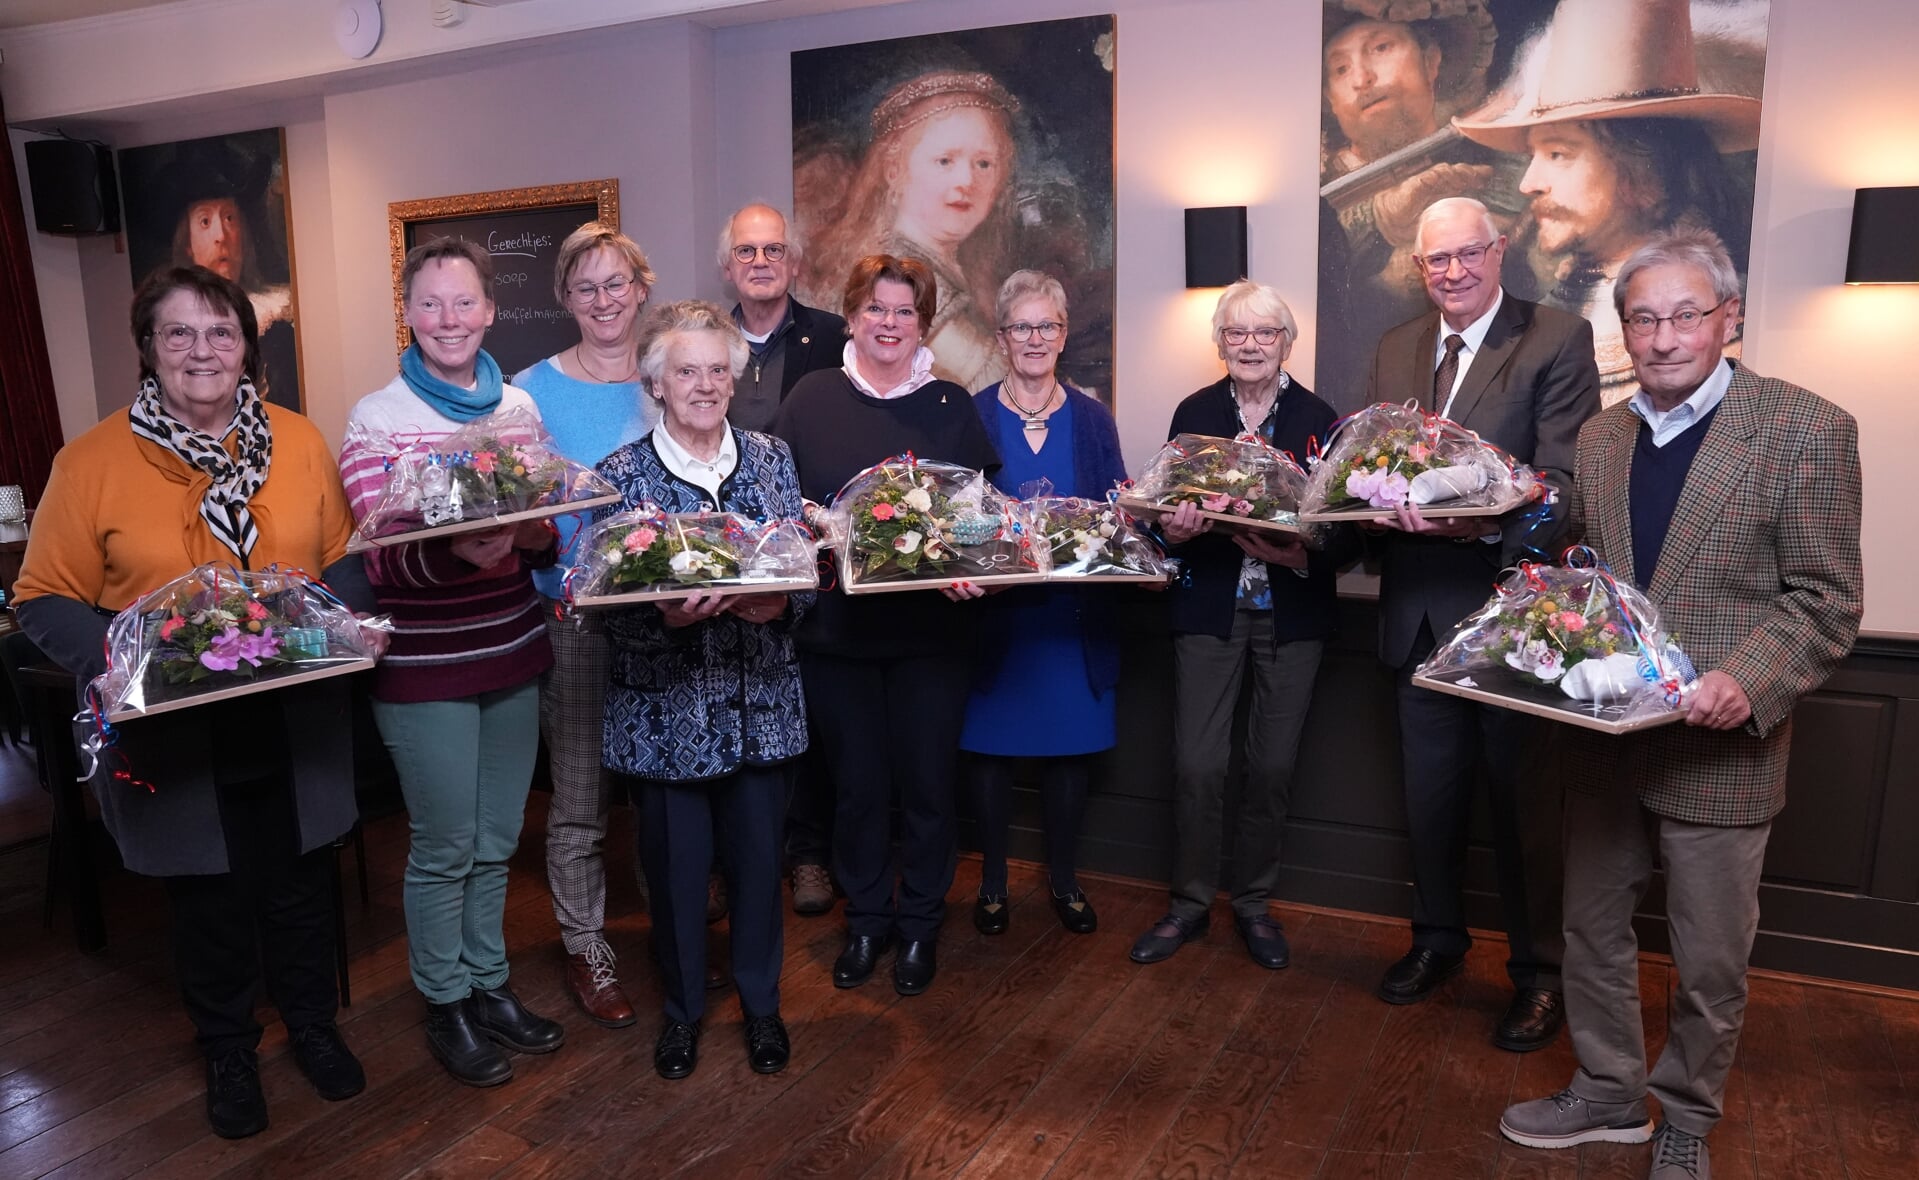 De acht jubilarissen van het Sint-Petruskoor, met twee dochters van Betsie van Kessel, die postuum werd geëerd. De zangers hebben menig viering opgeluisterd.